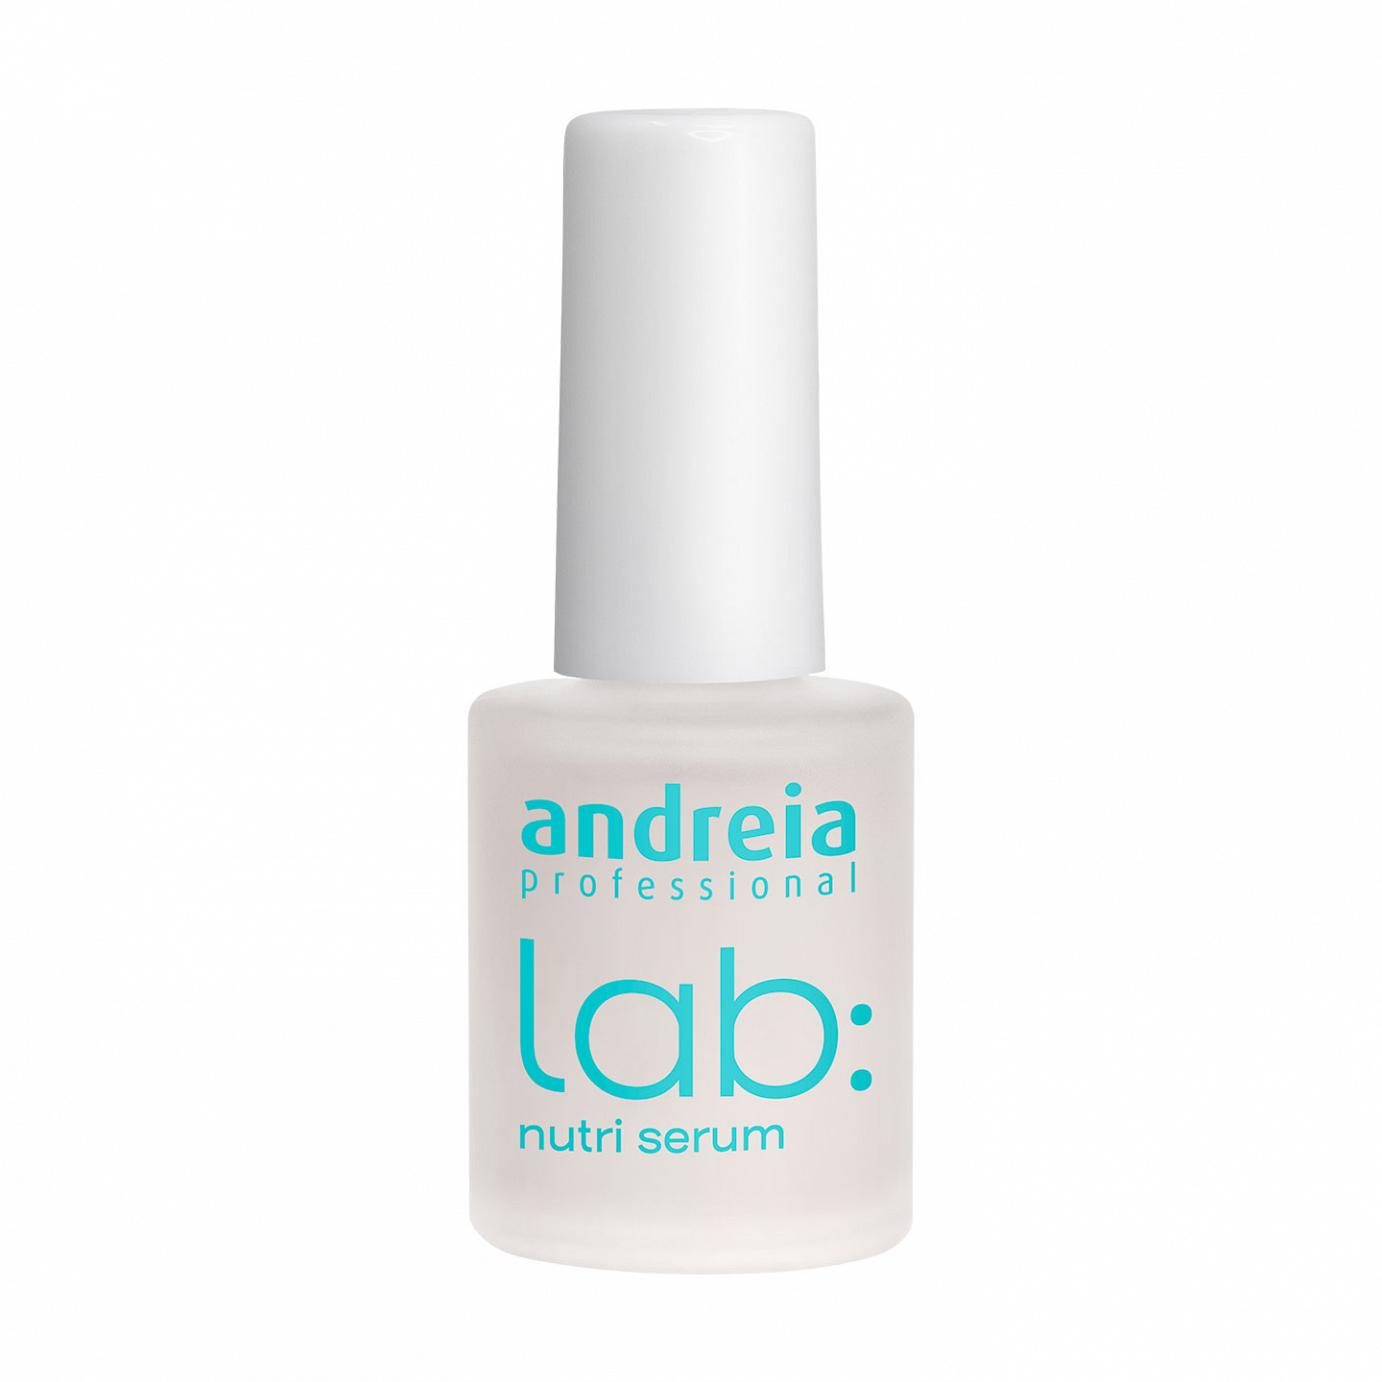 Andreia Lab verniz sérum nutritivo para unhas